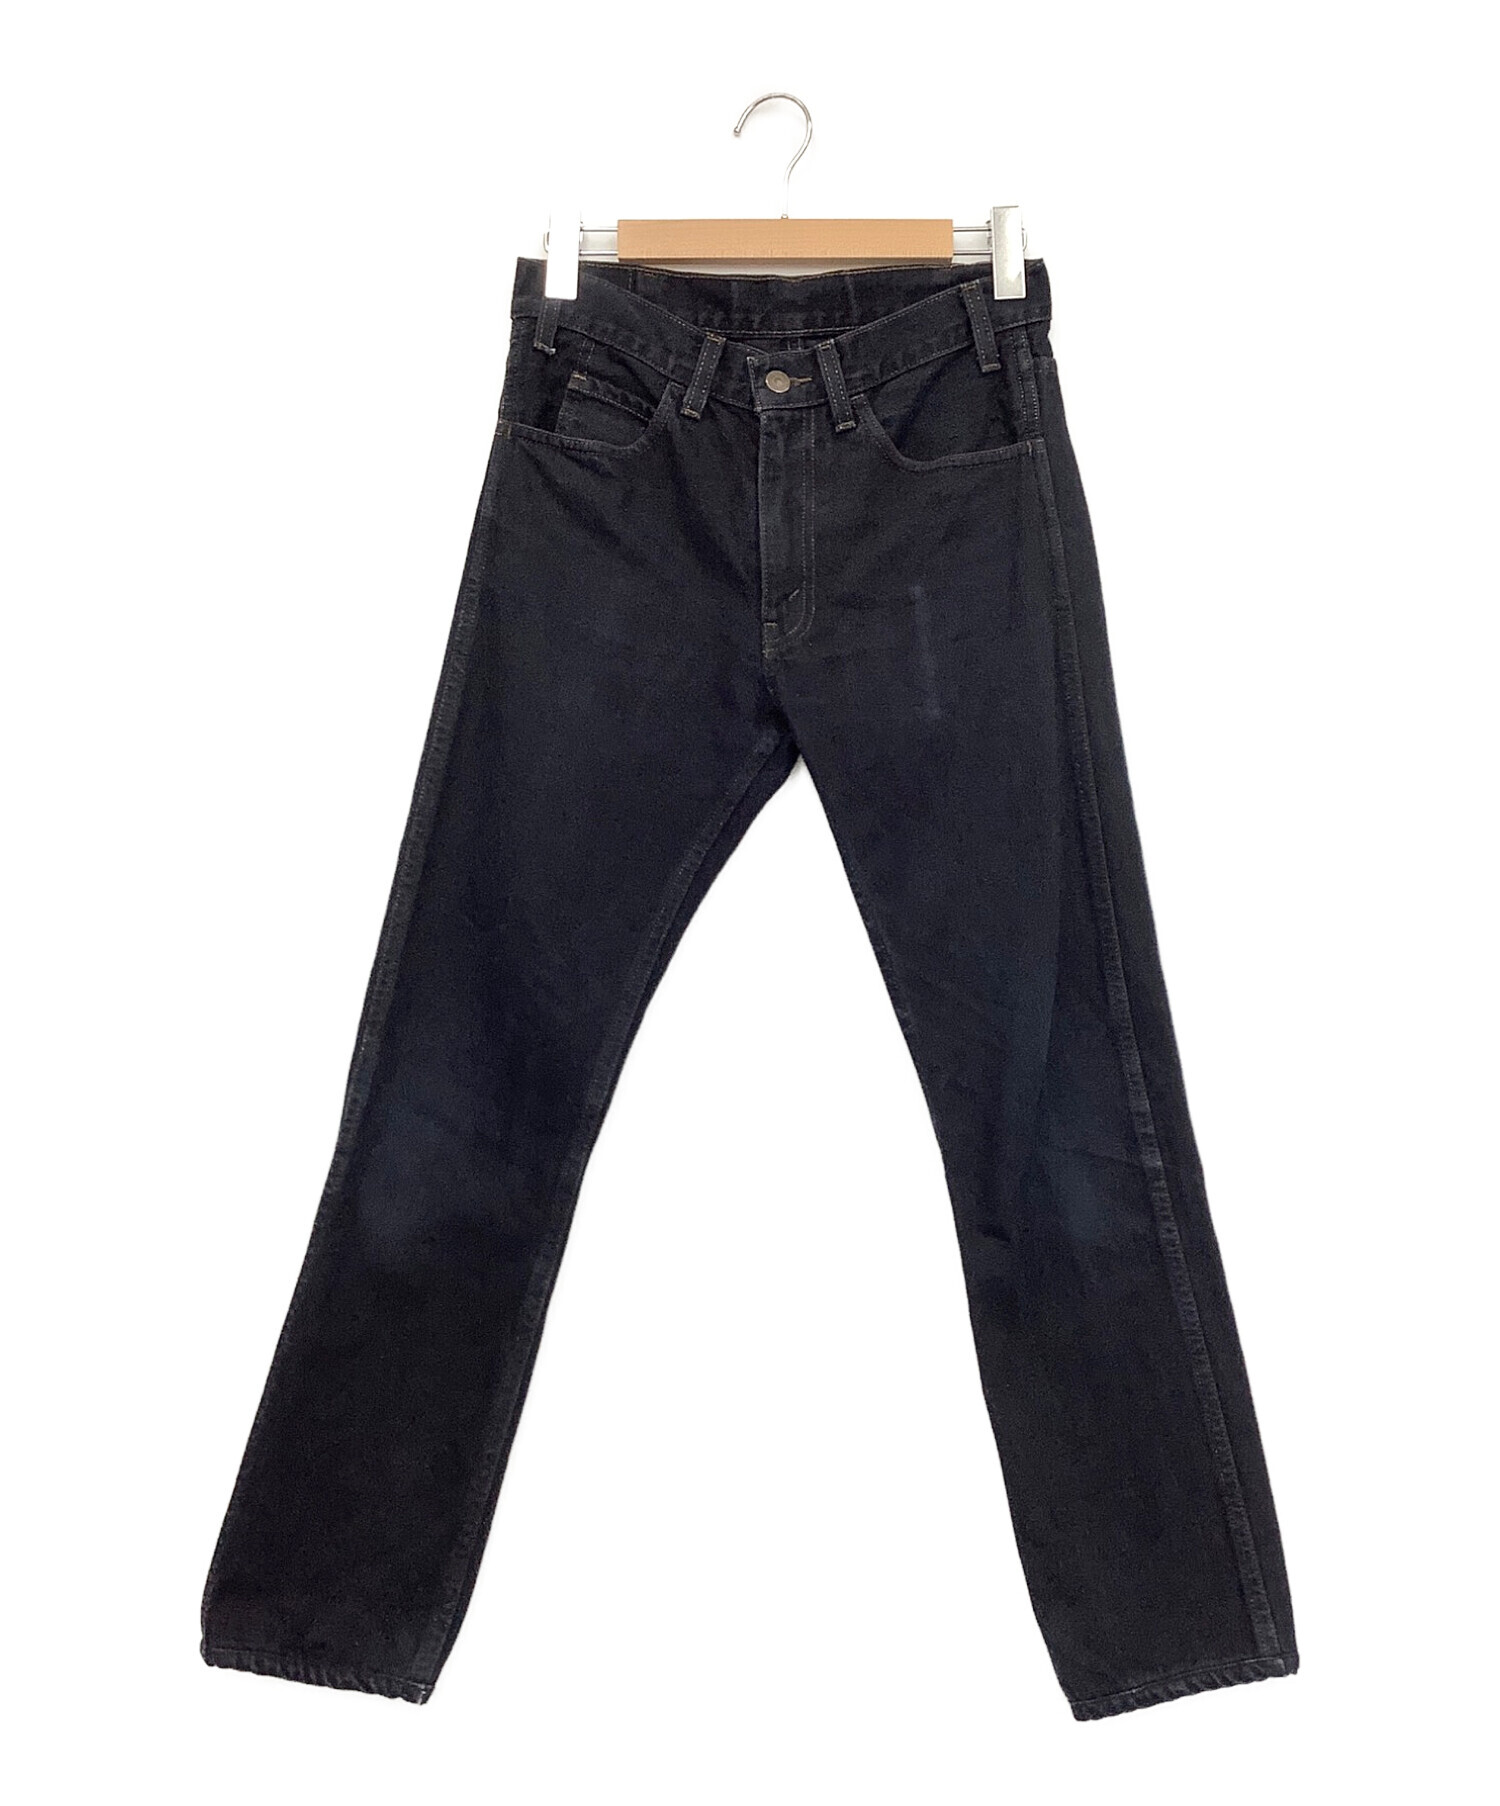 LEVI'S VINTAGE CLOTHING 606 (リーバイスヴィンテージクロージング) デニムパンツ ブラック サイズ:W28×L34